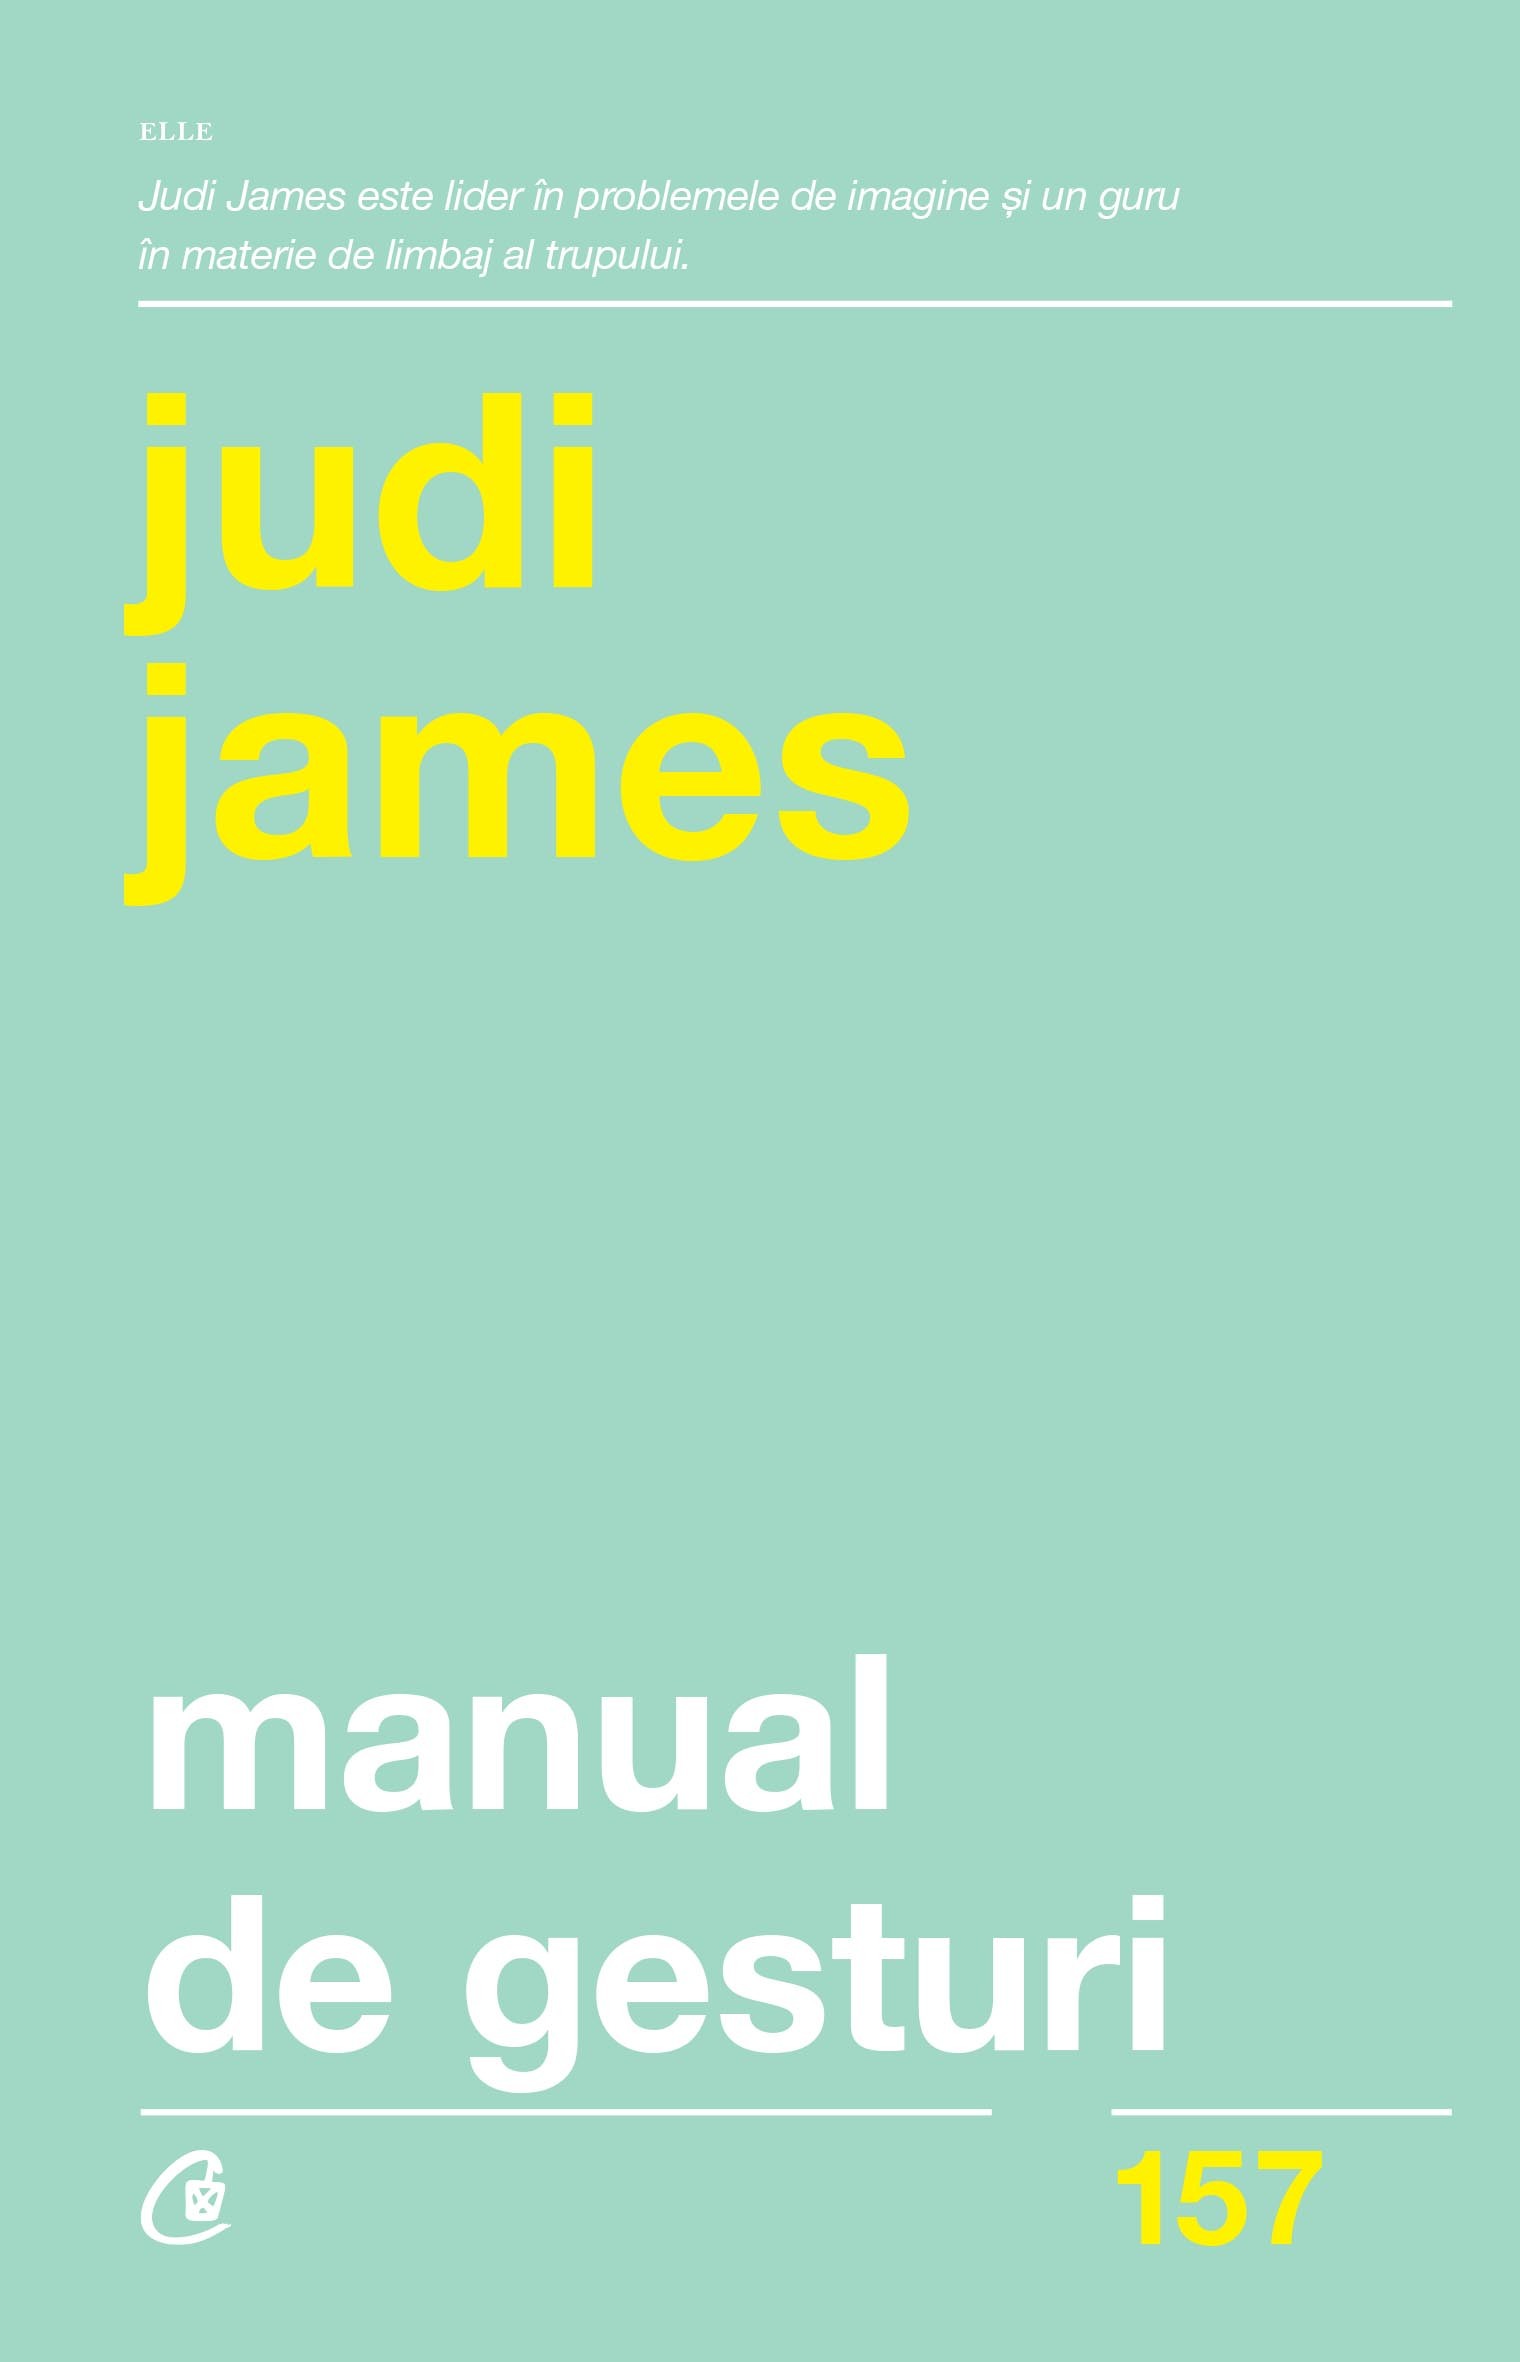 Manual de gesturi - Judi James